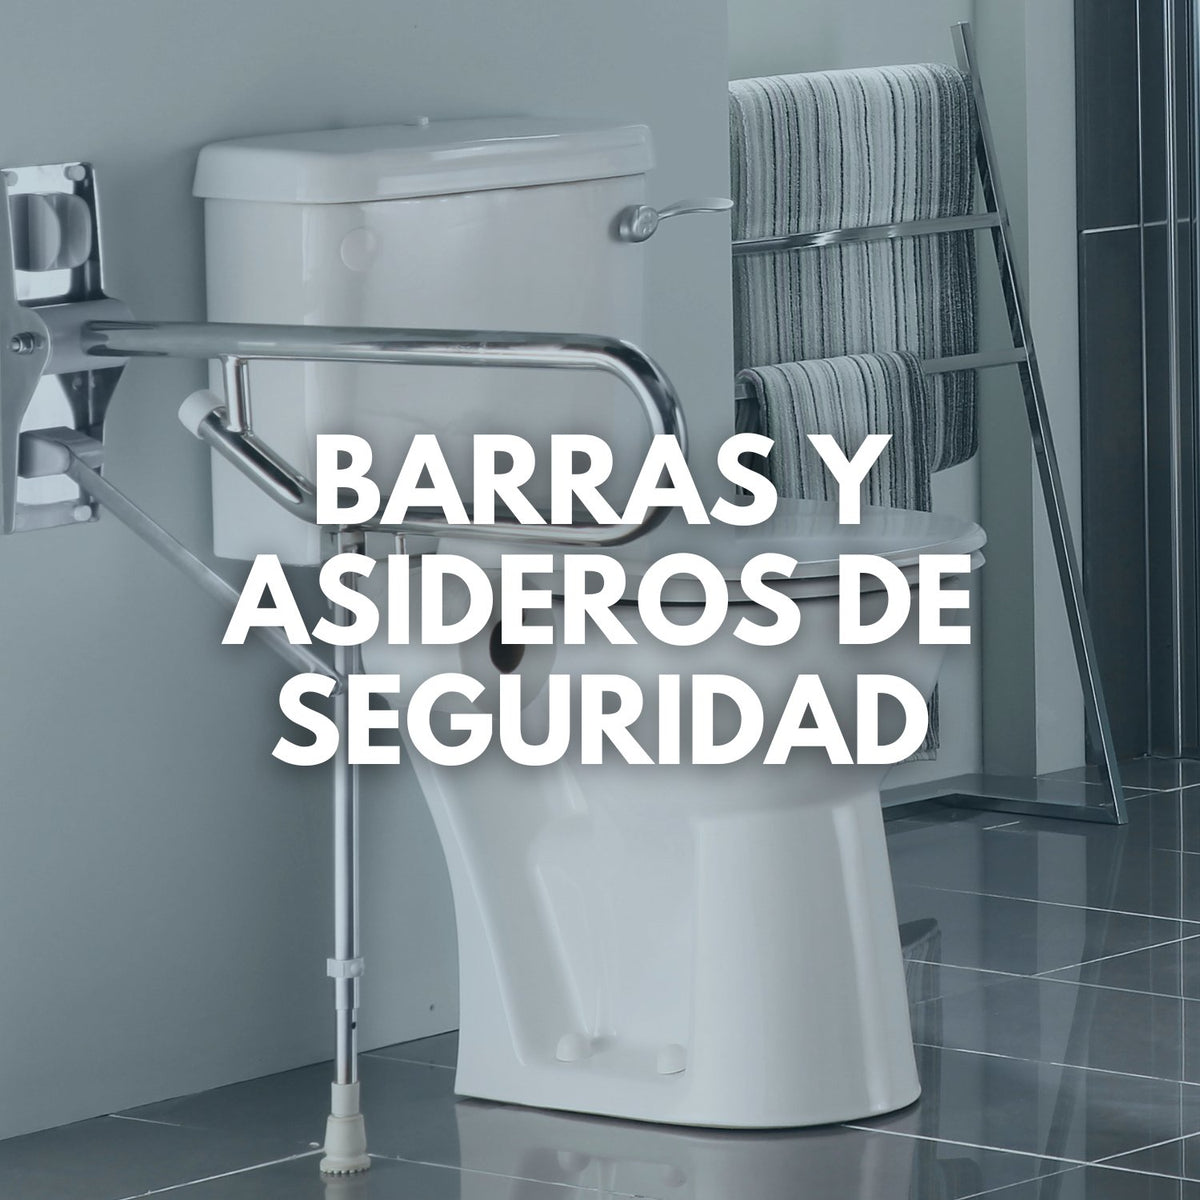 Shower Support Handrail Safety Disabled Elderly Grab Bar Handrail Toilet  Stainless Steel Agarrador Ducha Bathroom Accessories